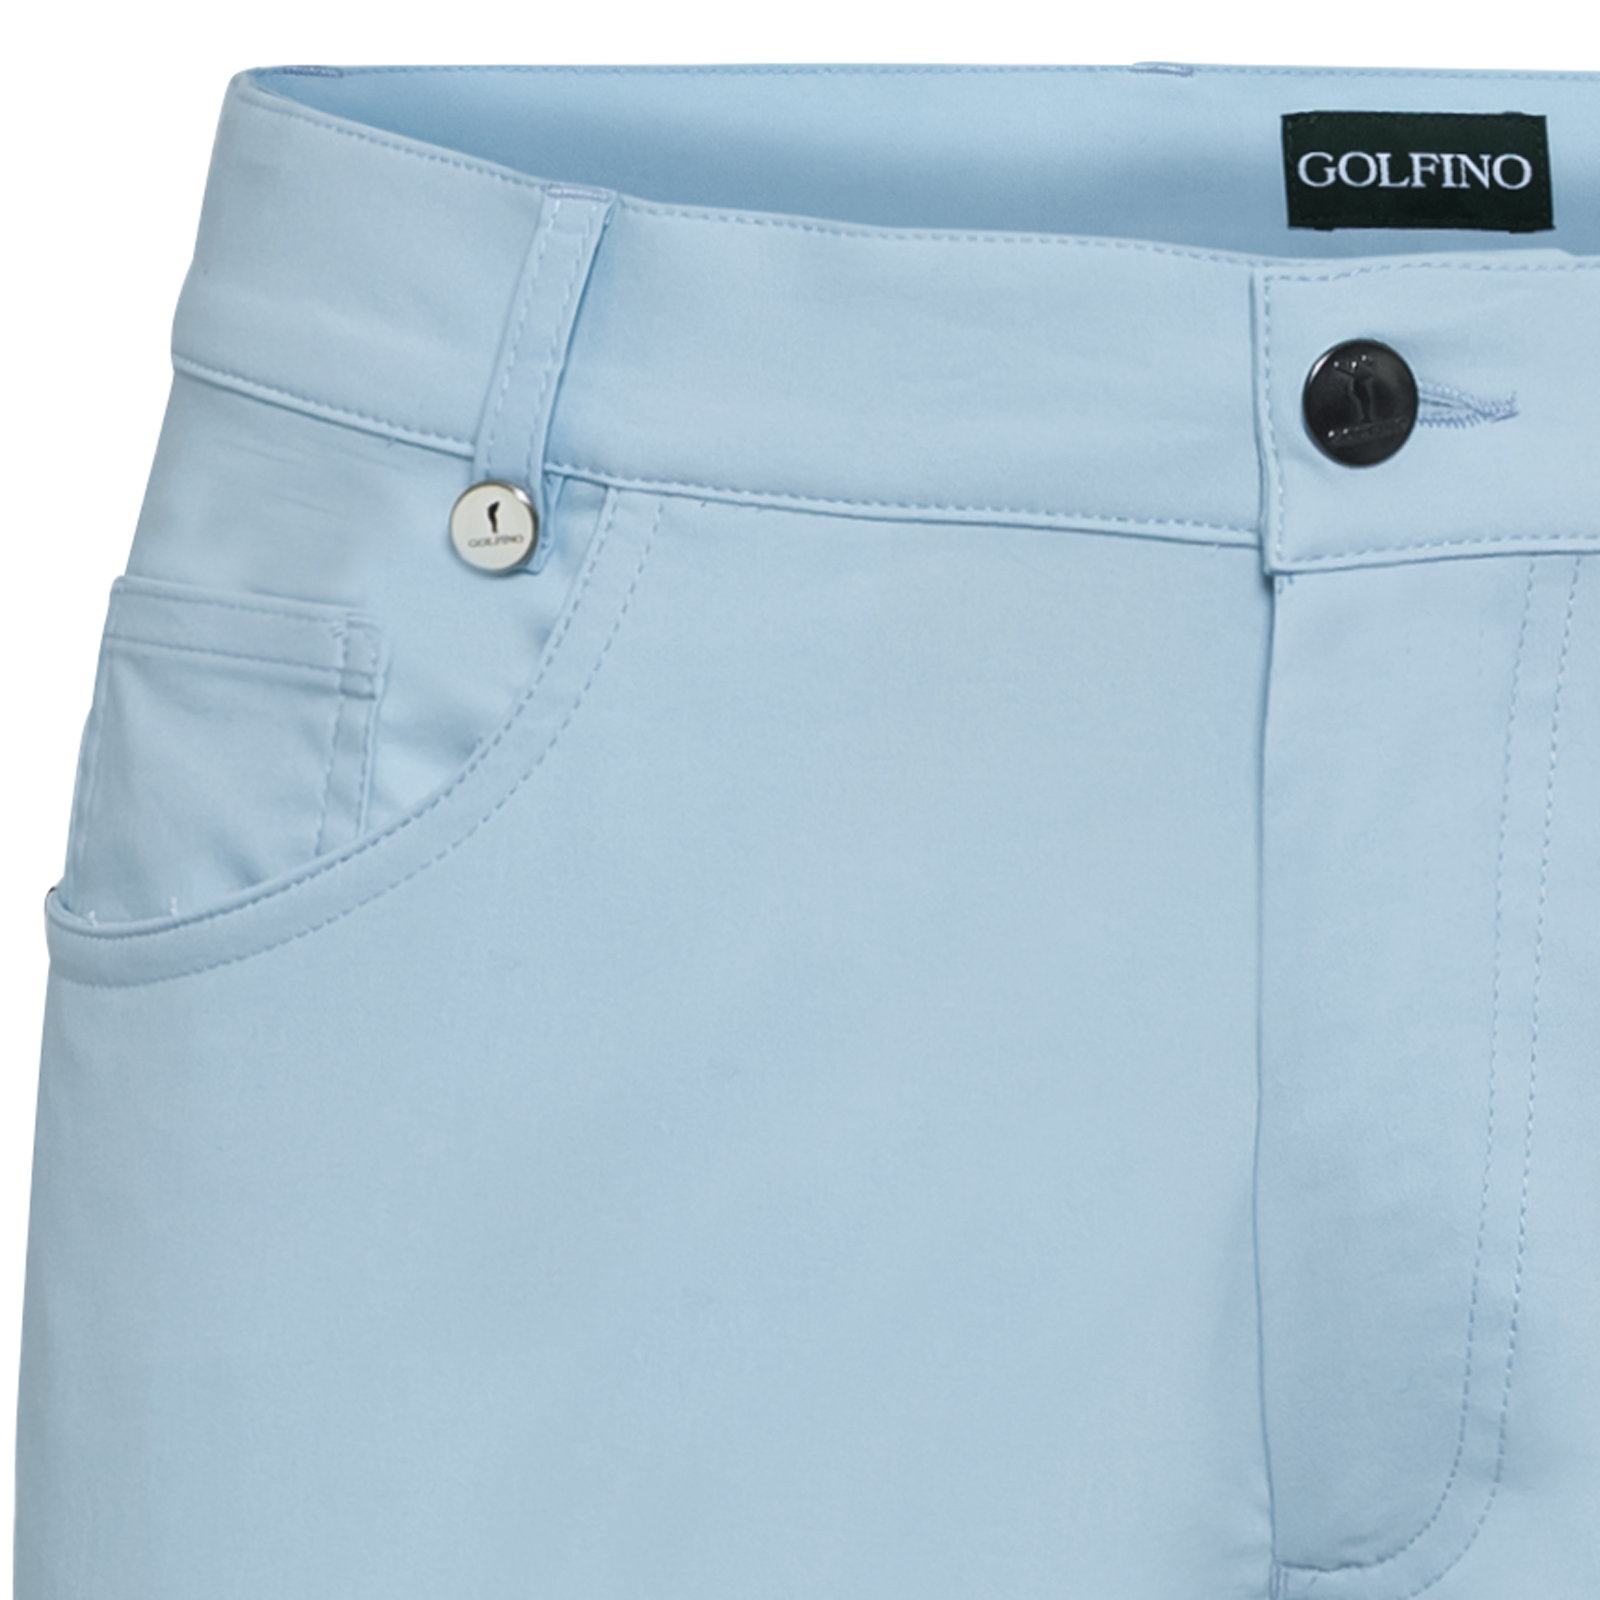 Pantalones de golf robustos y elásticos para hombre